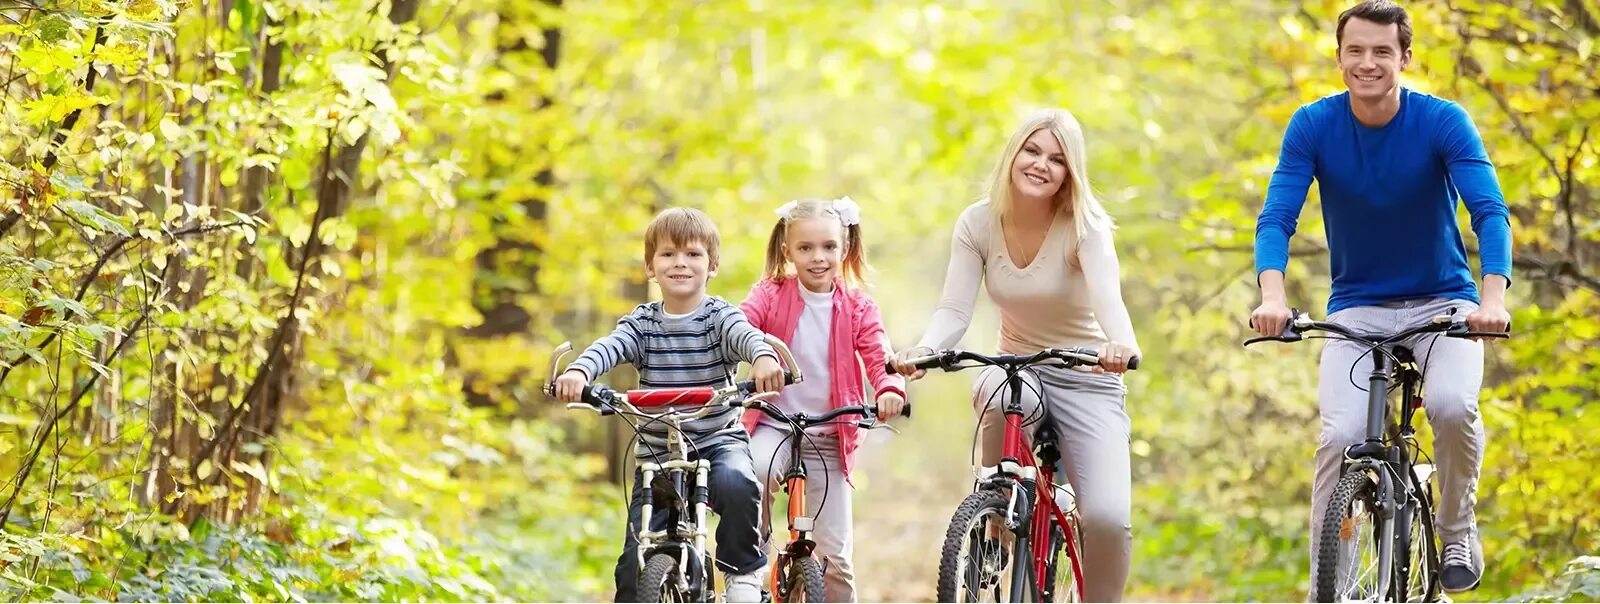 Спорт в год семьи. Велосипеды для всей семьи. Спортивная семья на природе. Семья на велосипедах. Прогулка на велосипеде семья.